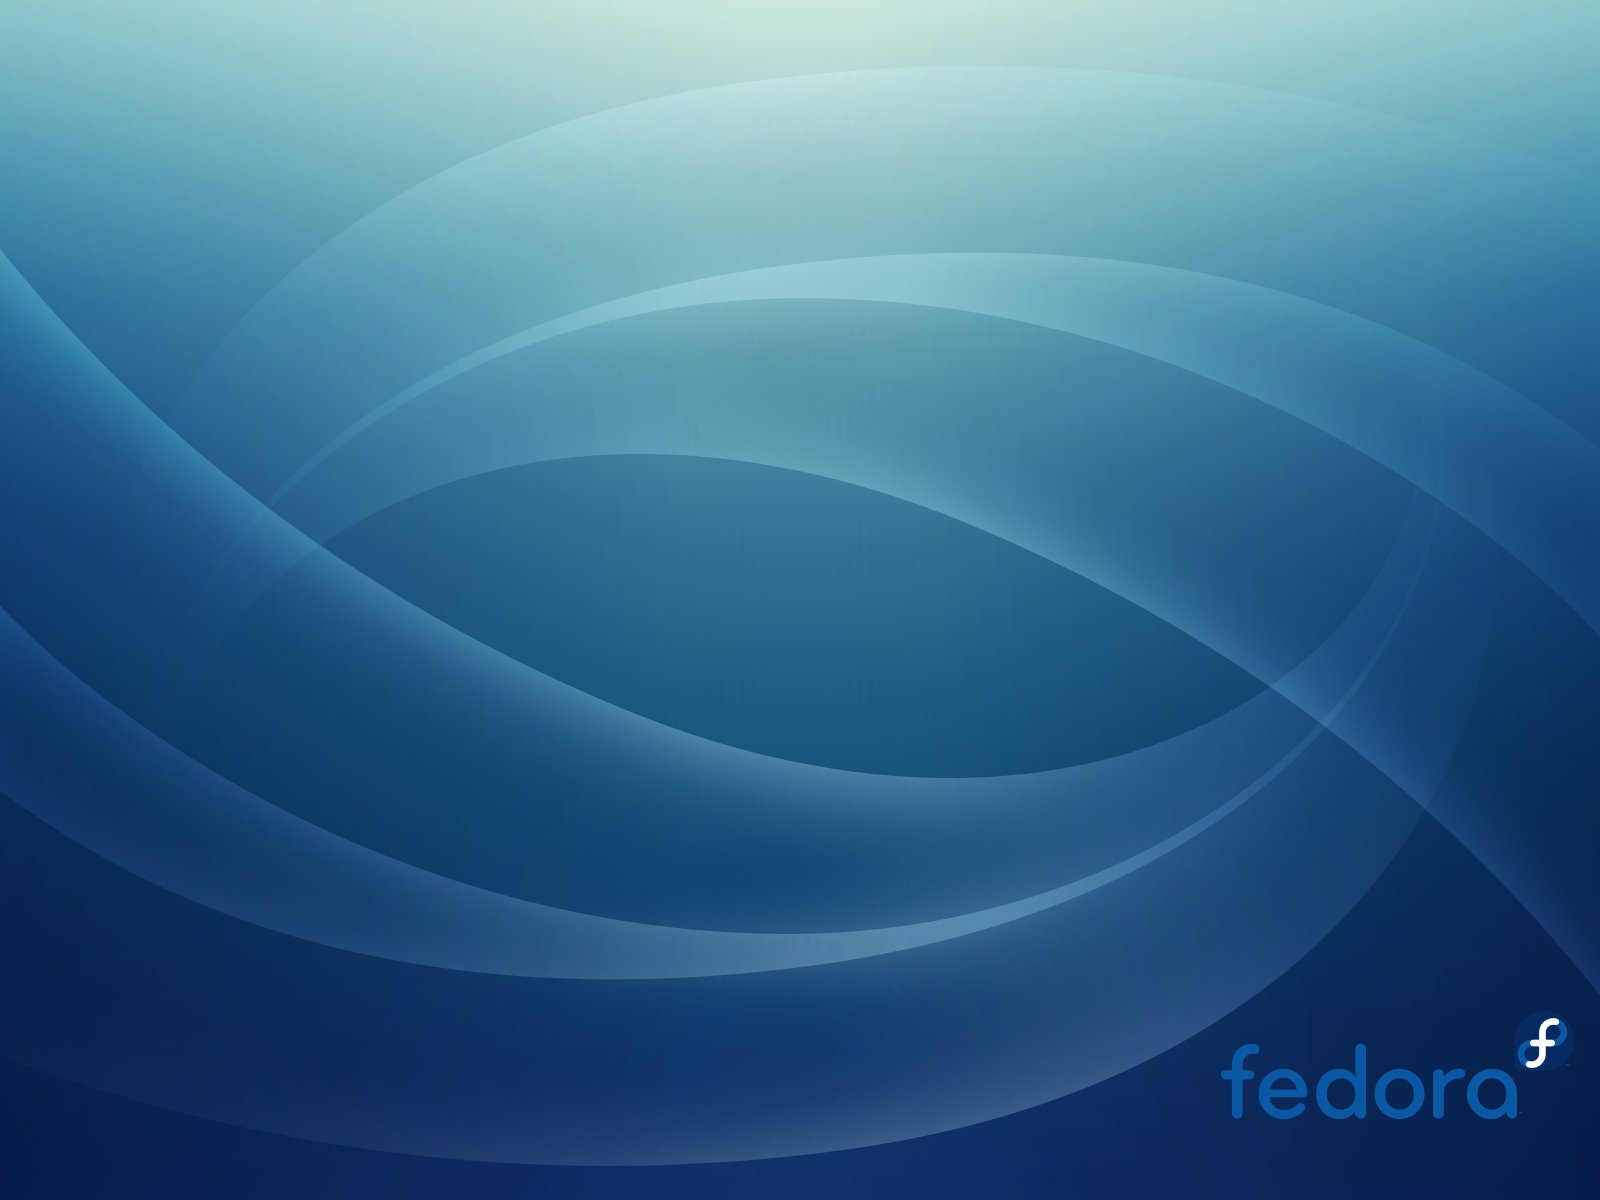 Fedora Wallpaper Widescreen